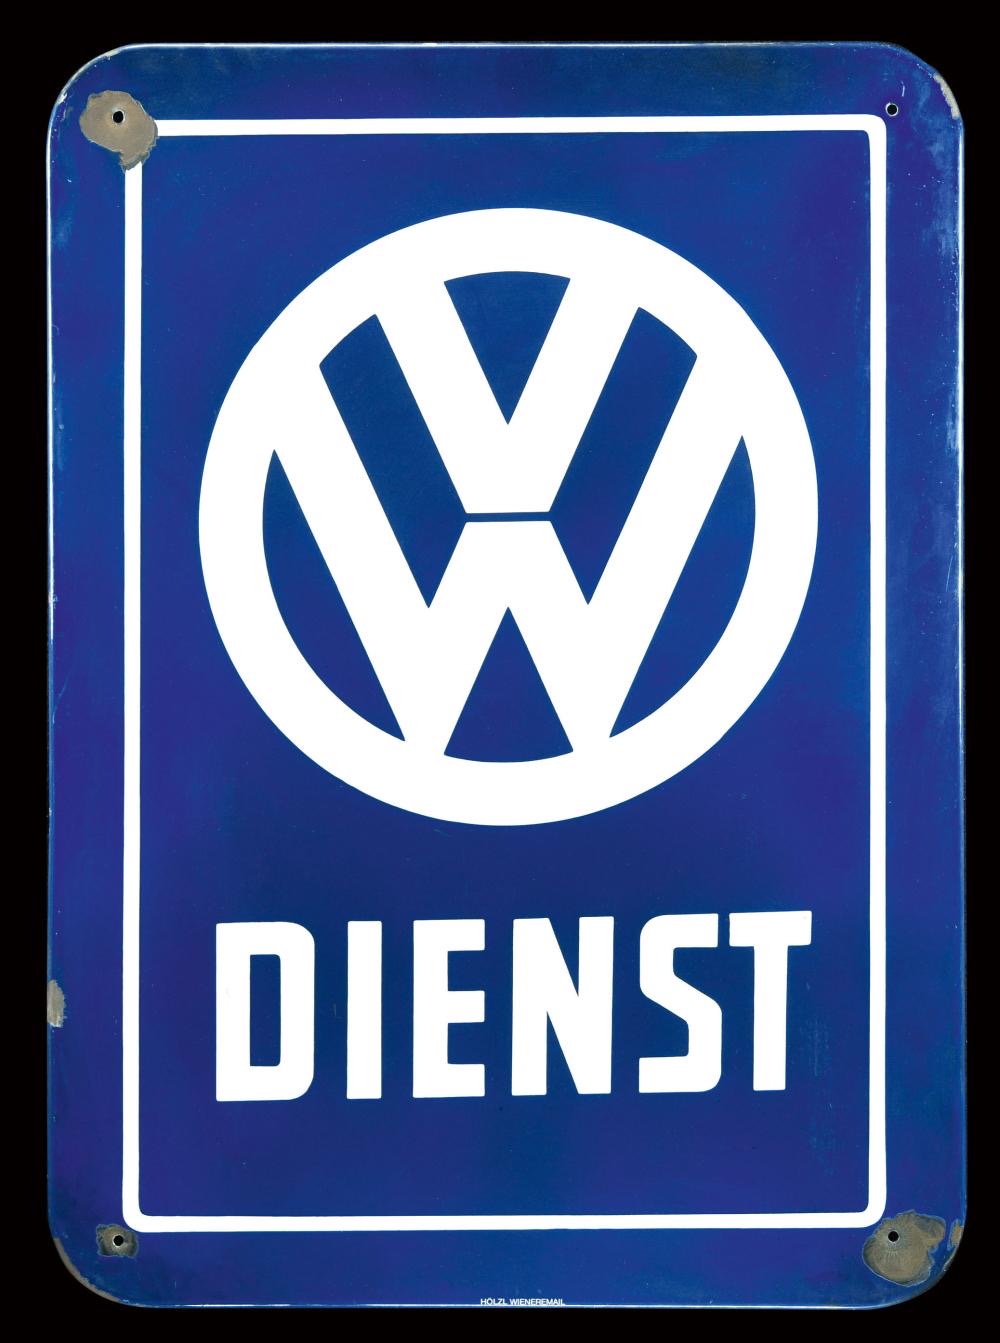 VW Dienst